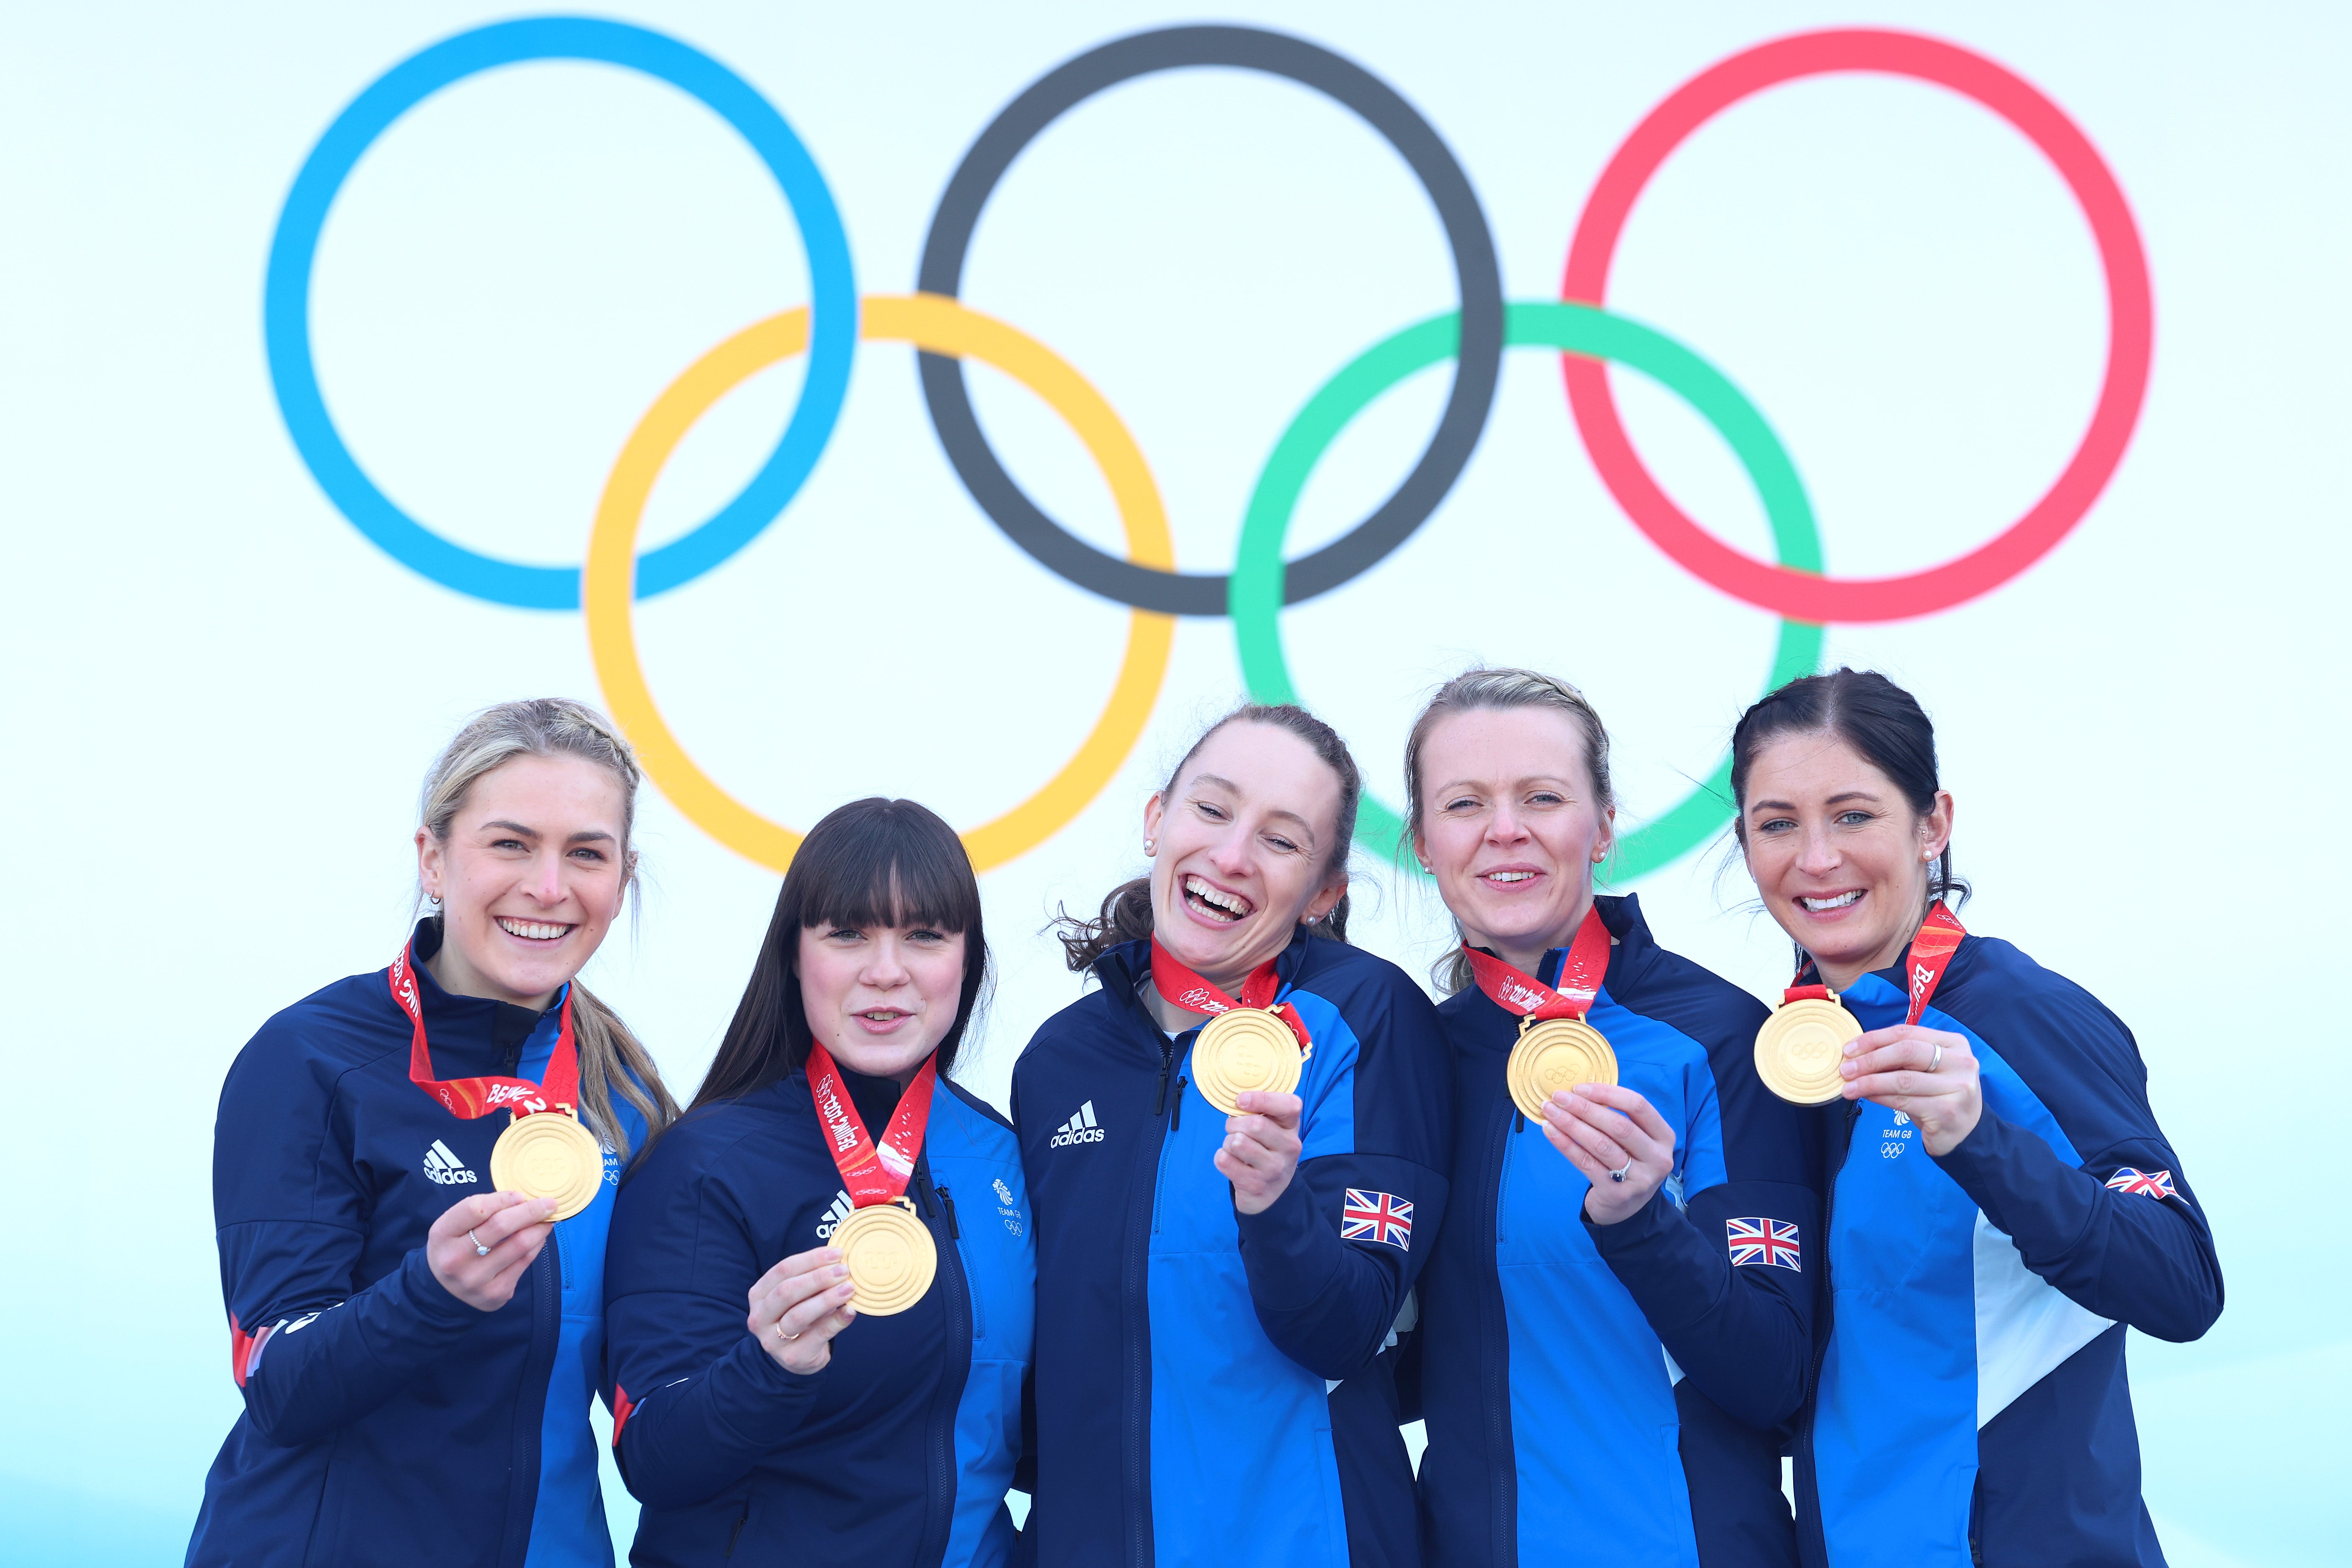 El equipo de Eve Muirhead ganó el oro en la última jornada, pero el Team GB quedó por debajo de su objetivo de medallas